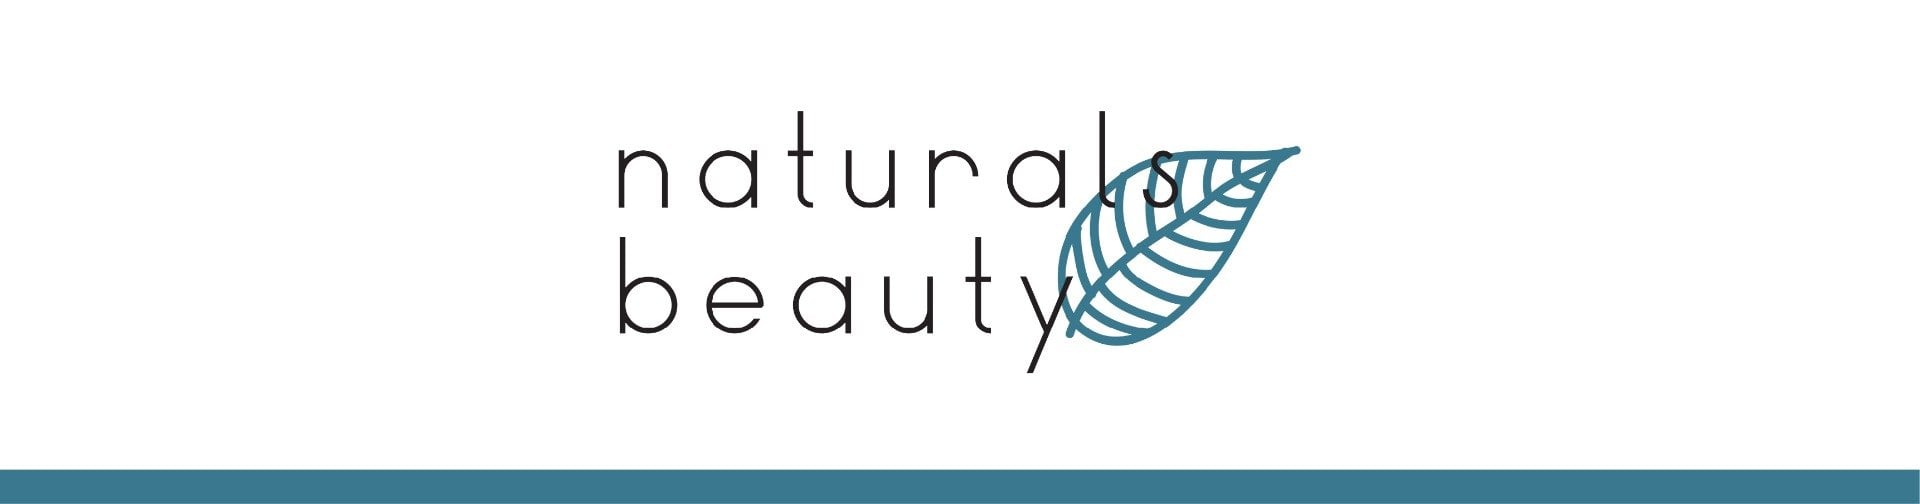 Naturals_Beauty_Shop-01